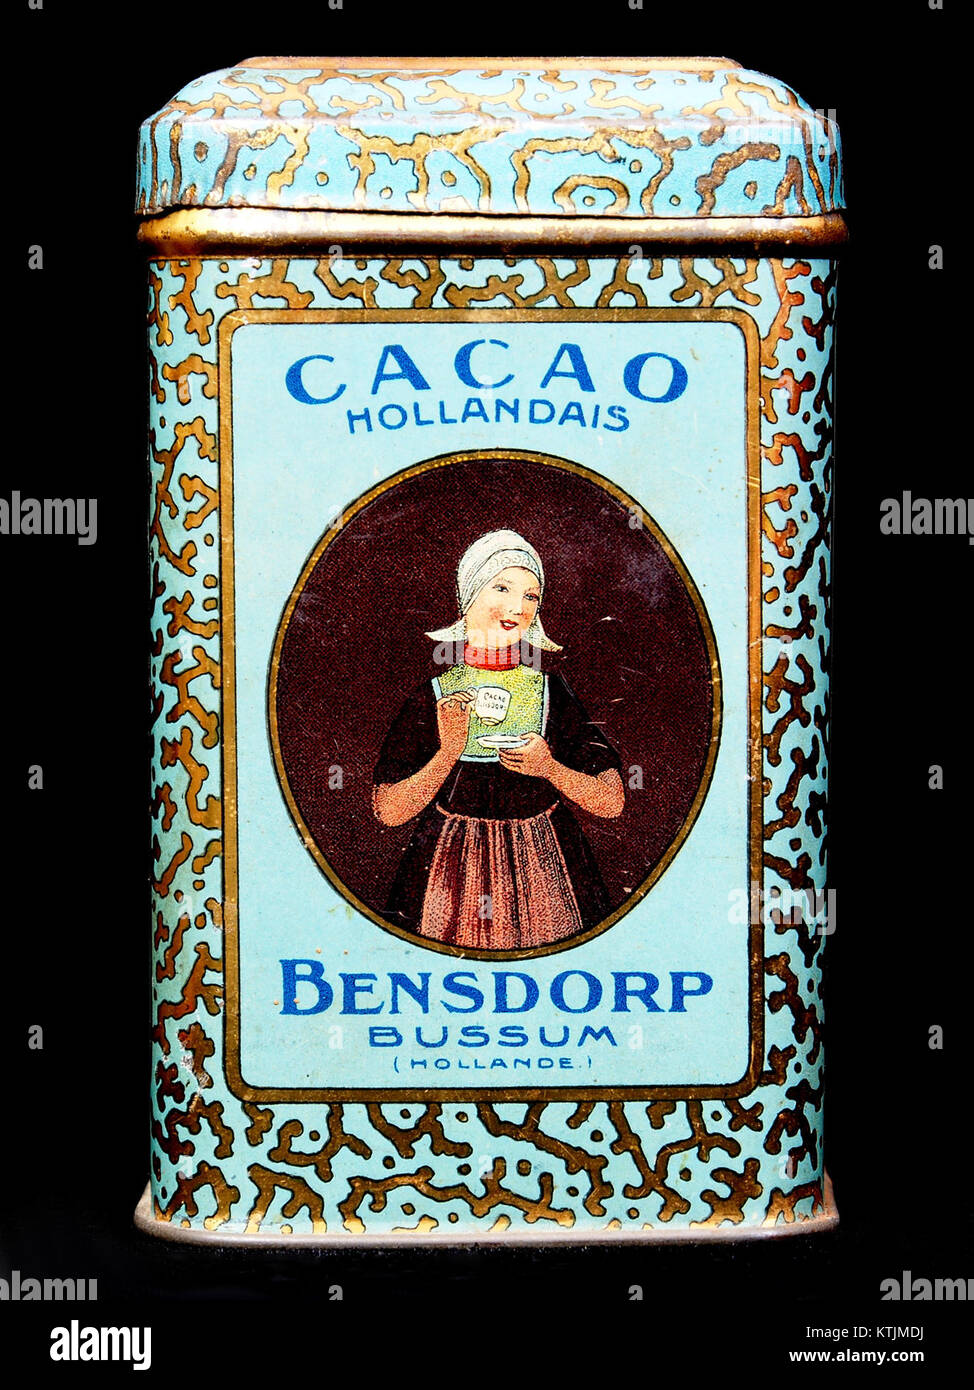 Bensdorp cacao blikje met afbeeldingen van Rotterdam, foto3 Stock Photo